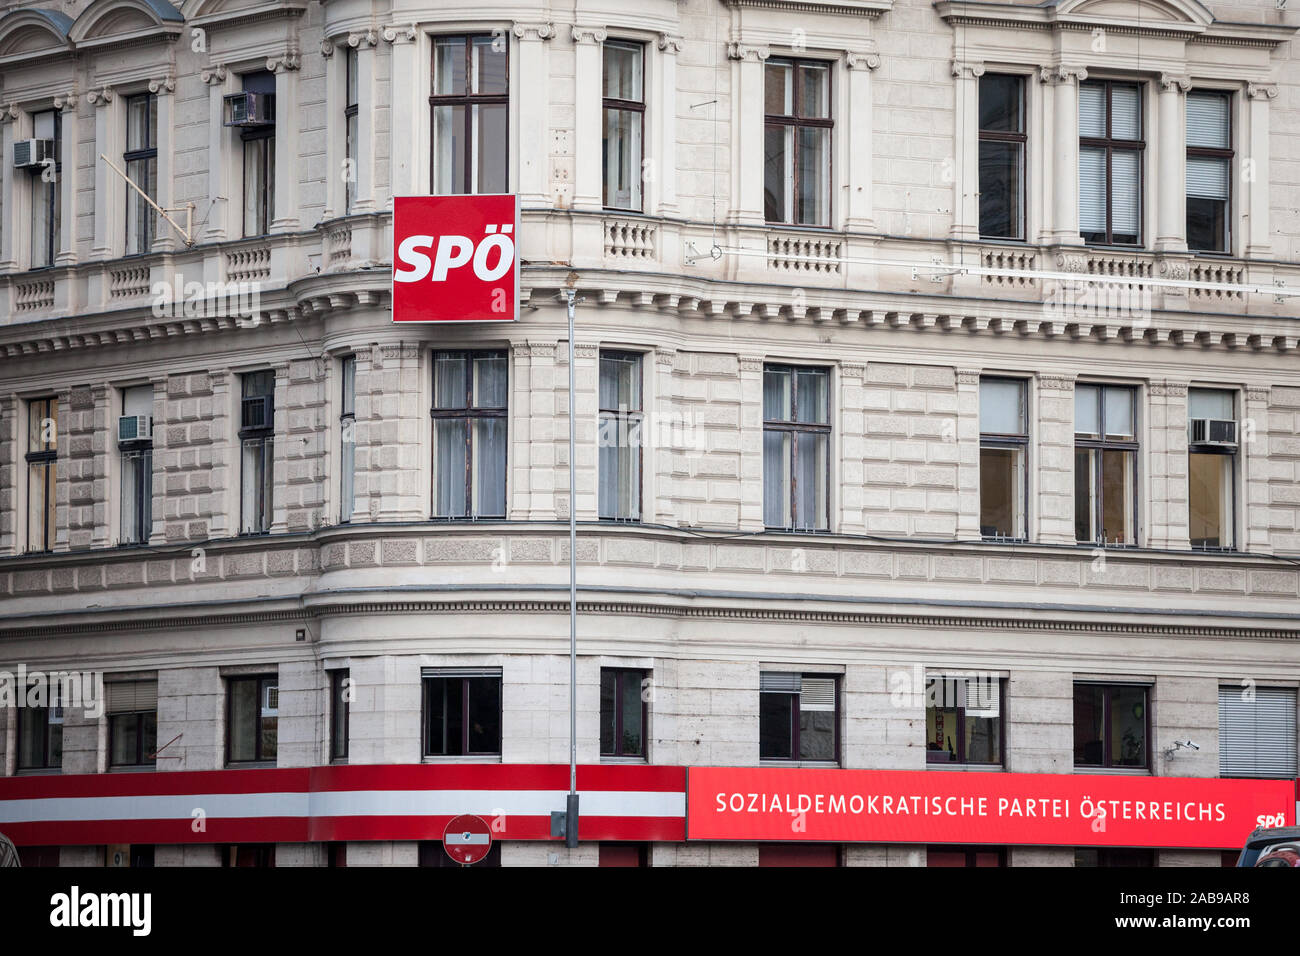 Vienne, Autriche - le 6 novembre 2019 : SPO logo sur leur bureau principal de Vienne. Également appelé Sozialdemokratische Partei Osterreichs, c'est la démonstration sociale Banque D'Images